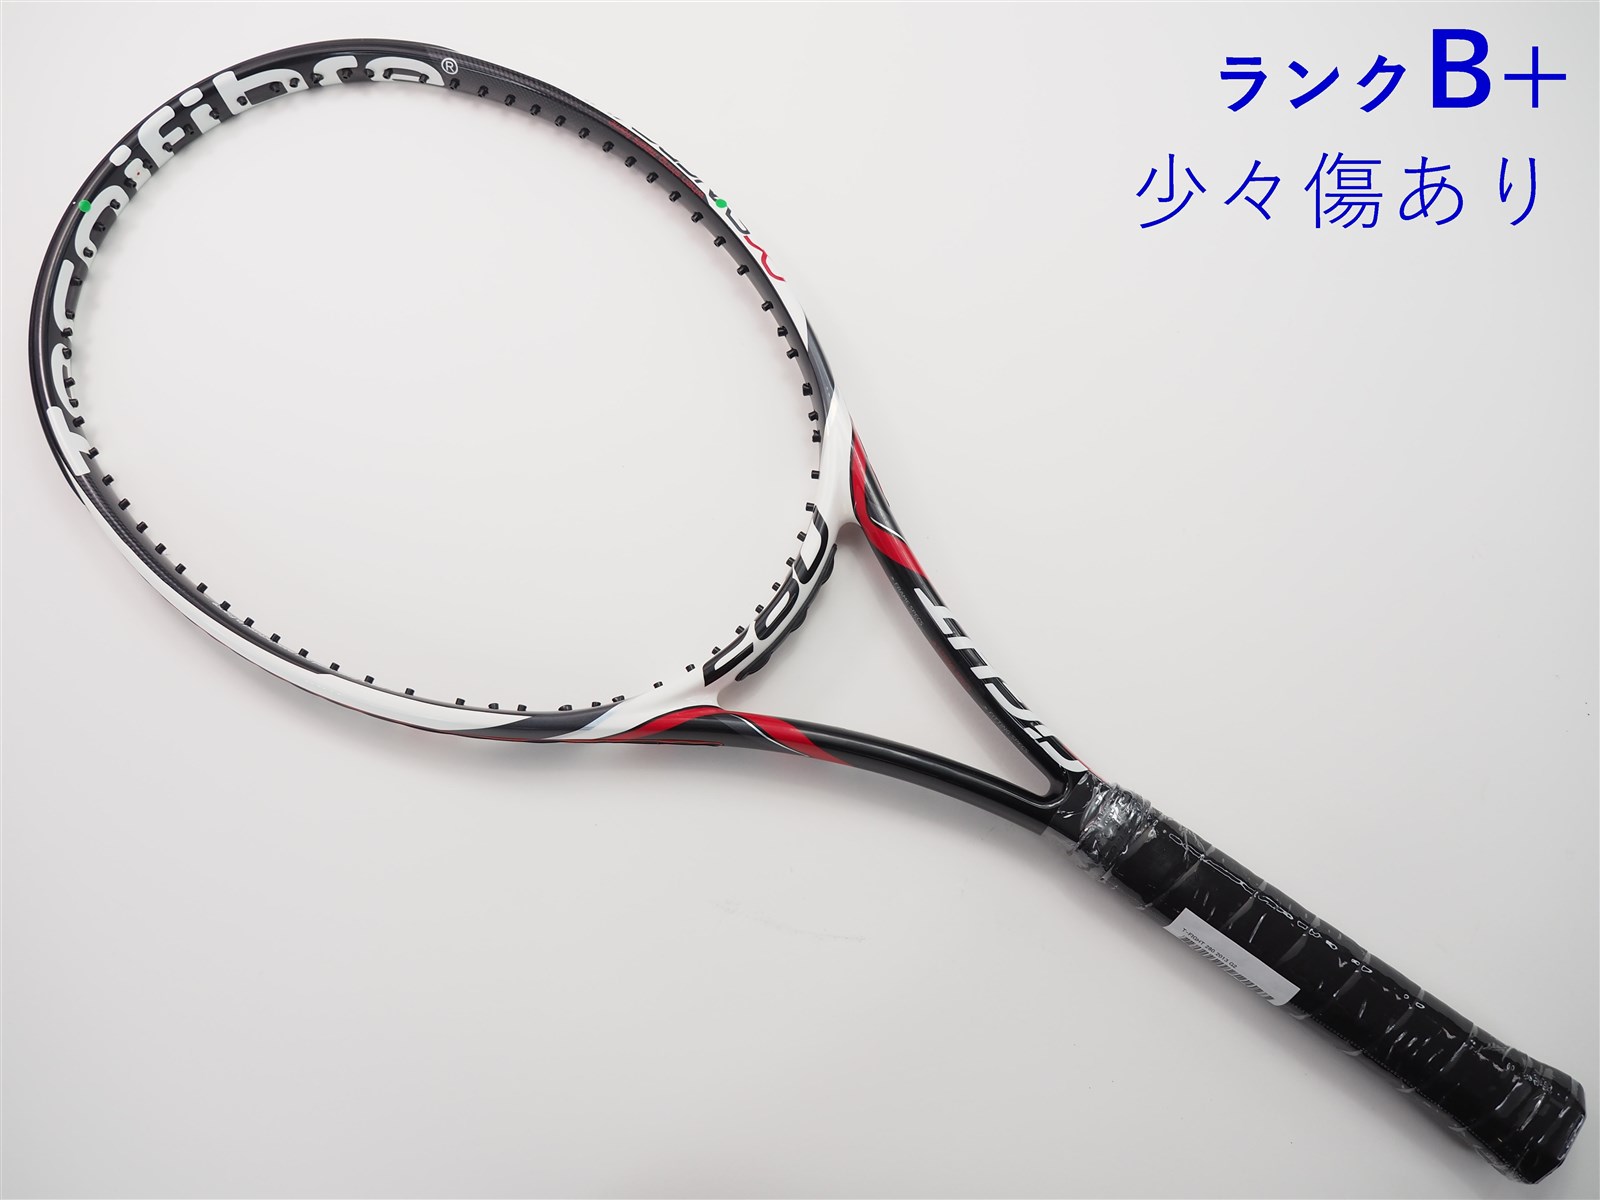 テニスラケット テクニファイバー ティーファイト 280 2015年モデル ...